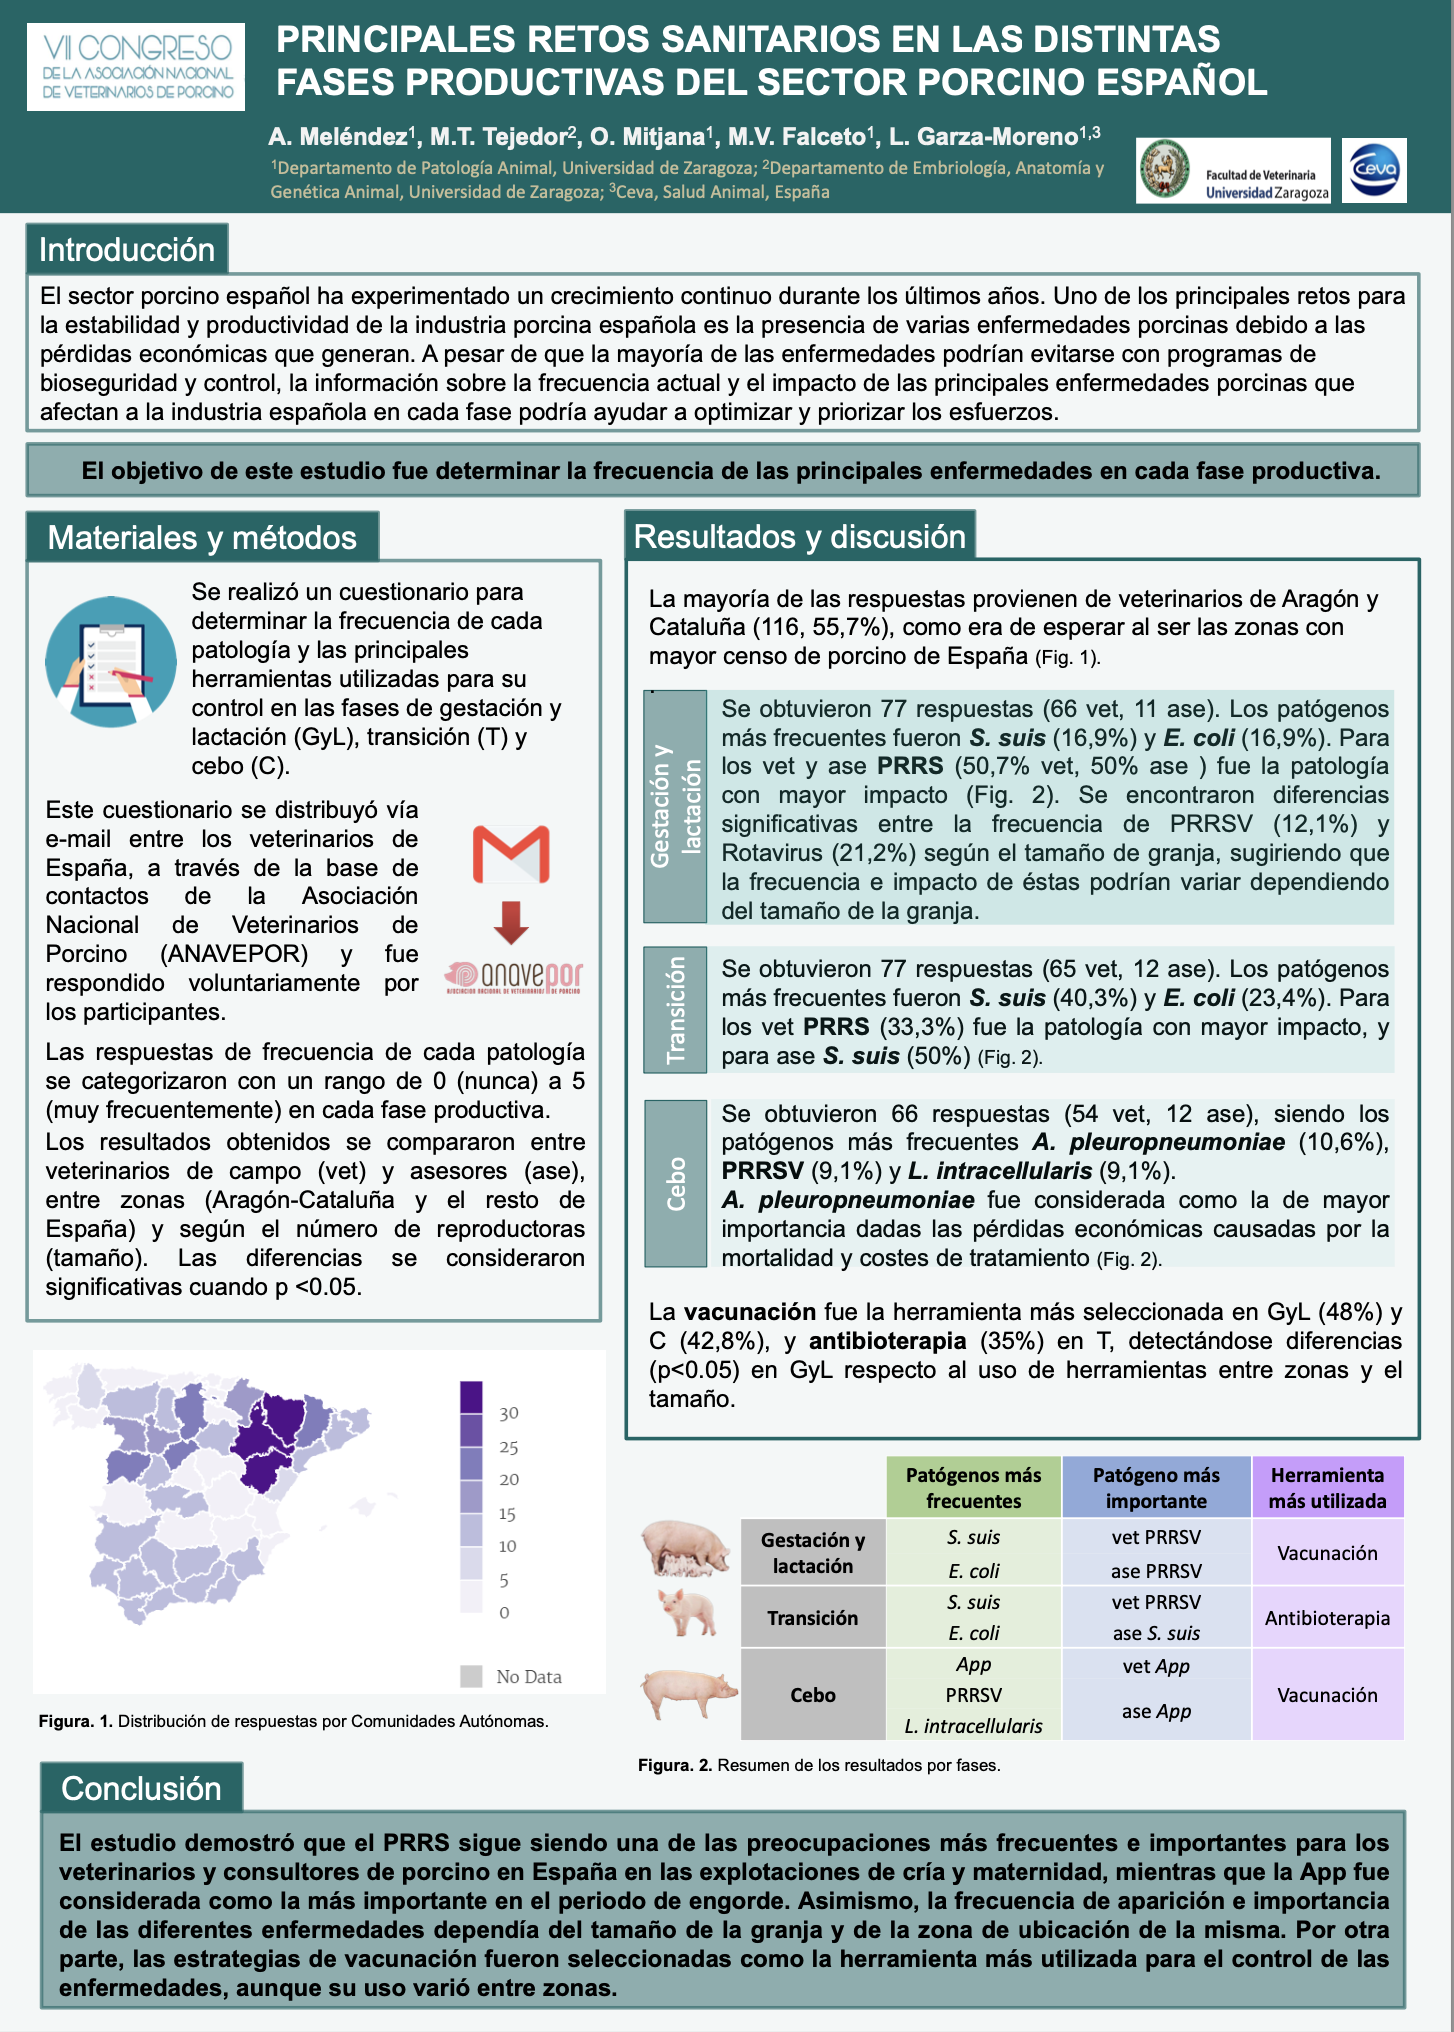 AXON COMUNICACION, Principales retos sanitarios en las distintas fases productivas del sector porcino español